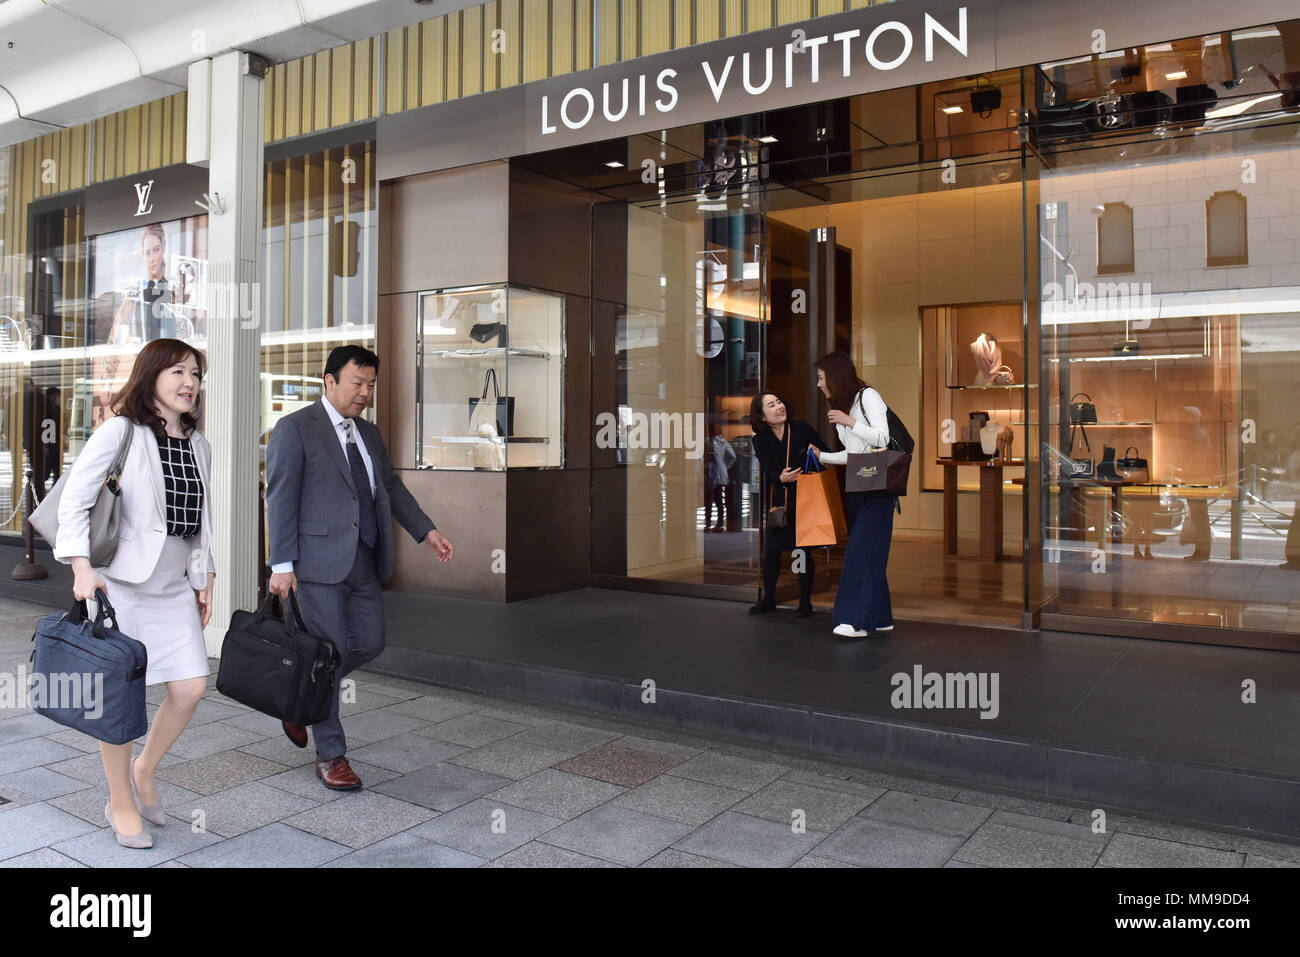 Louis Vuitton store – Stock Editorial Photo © grand-warszawski #172371750